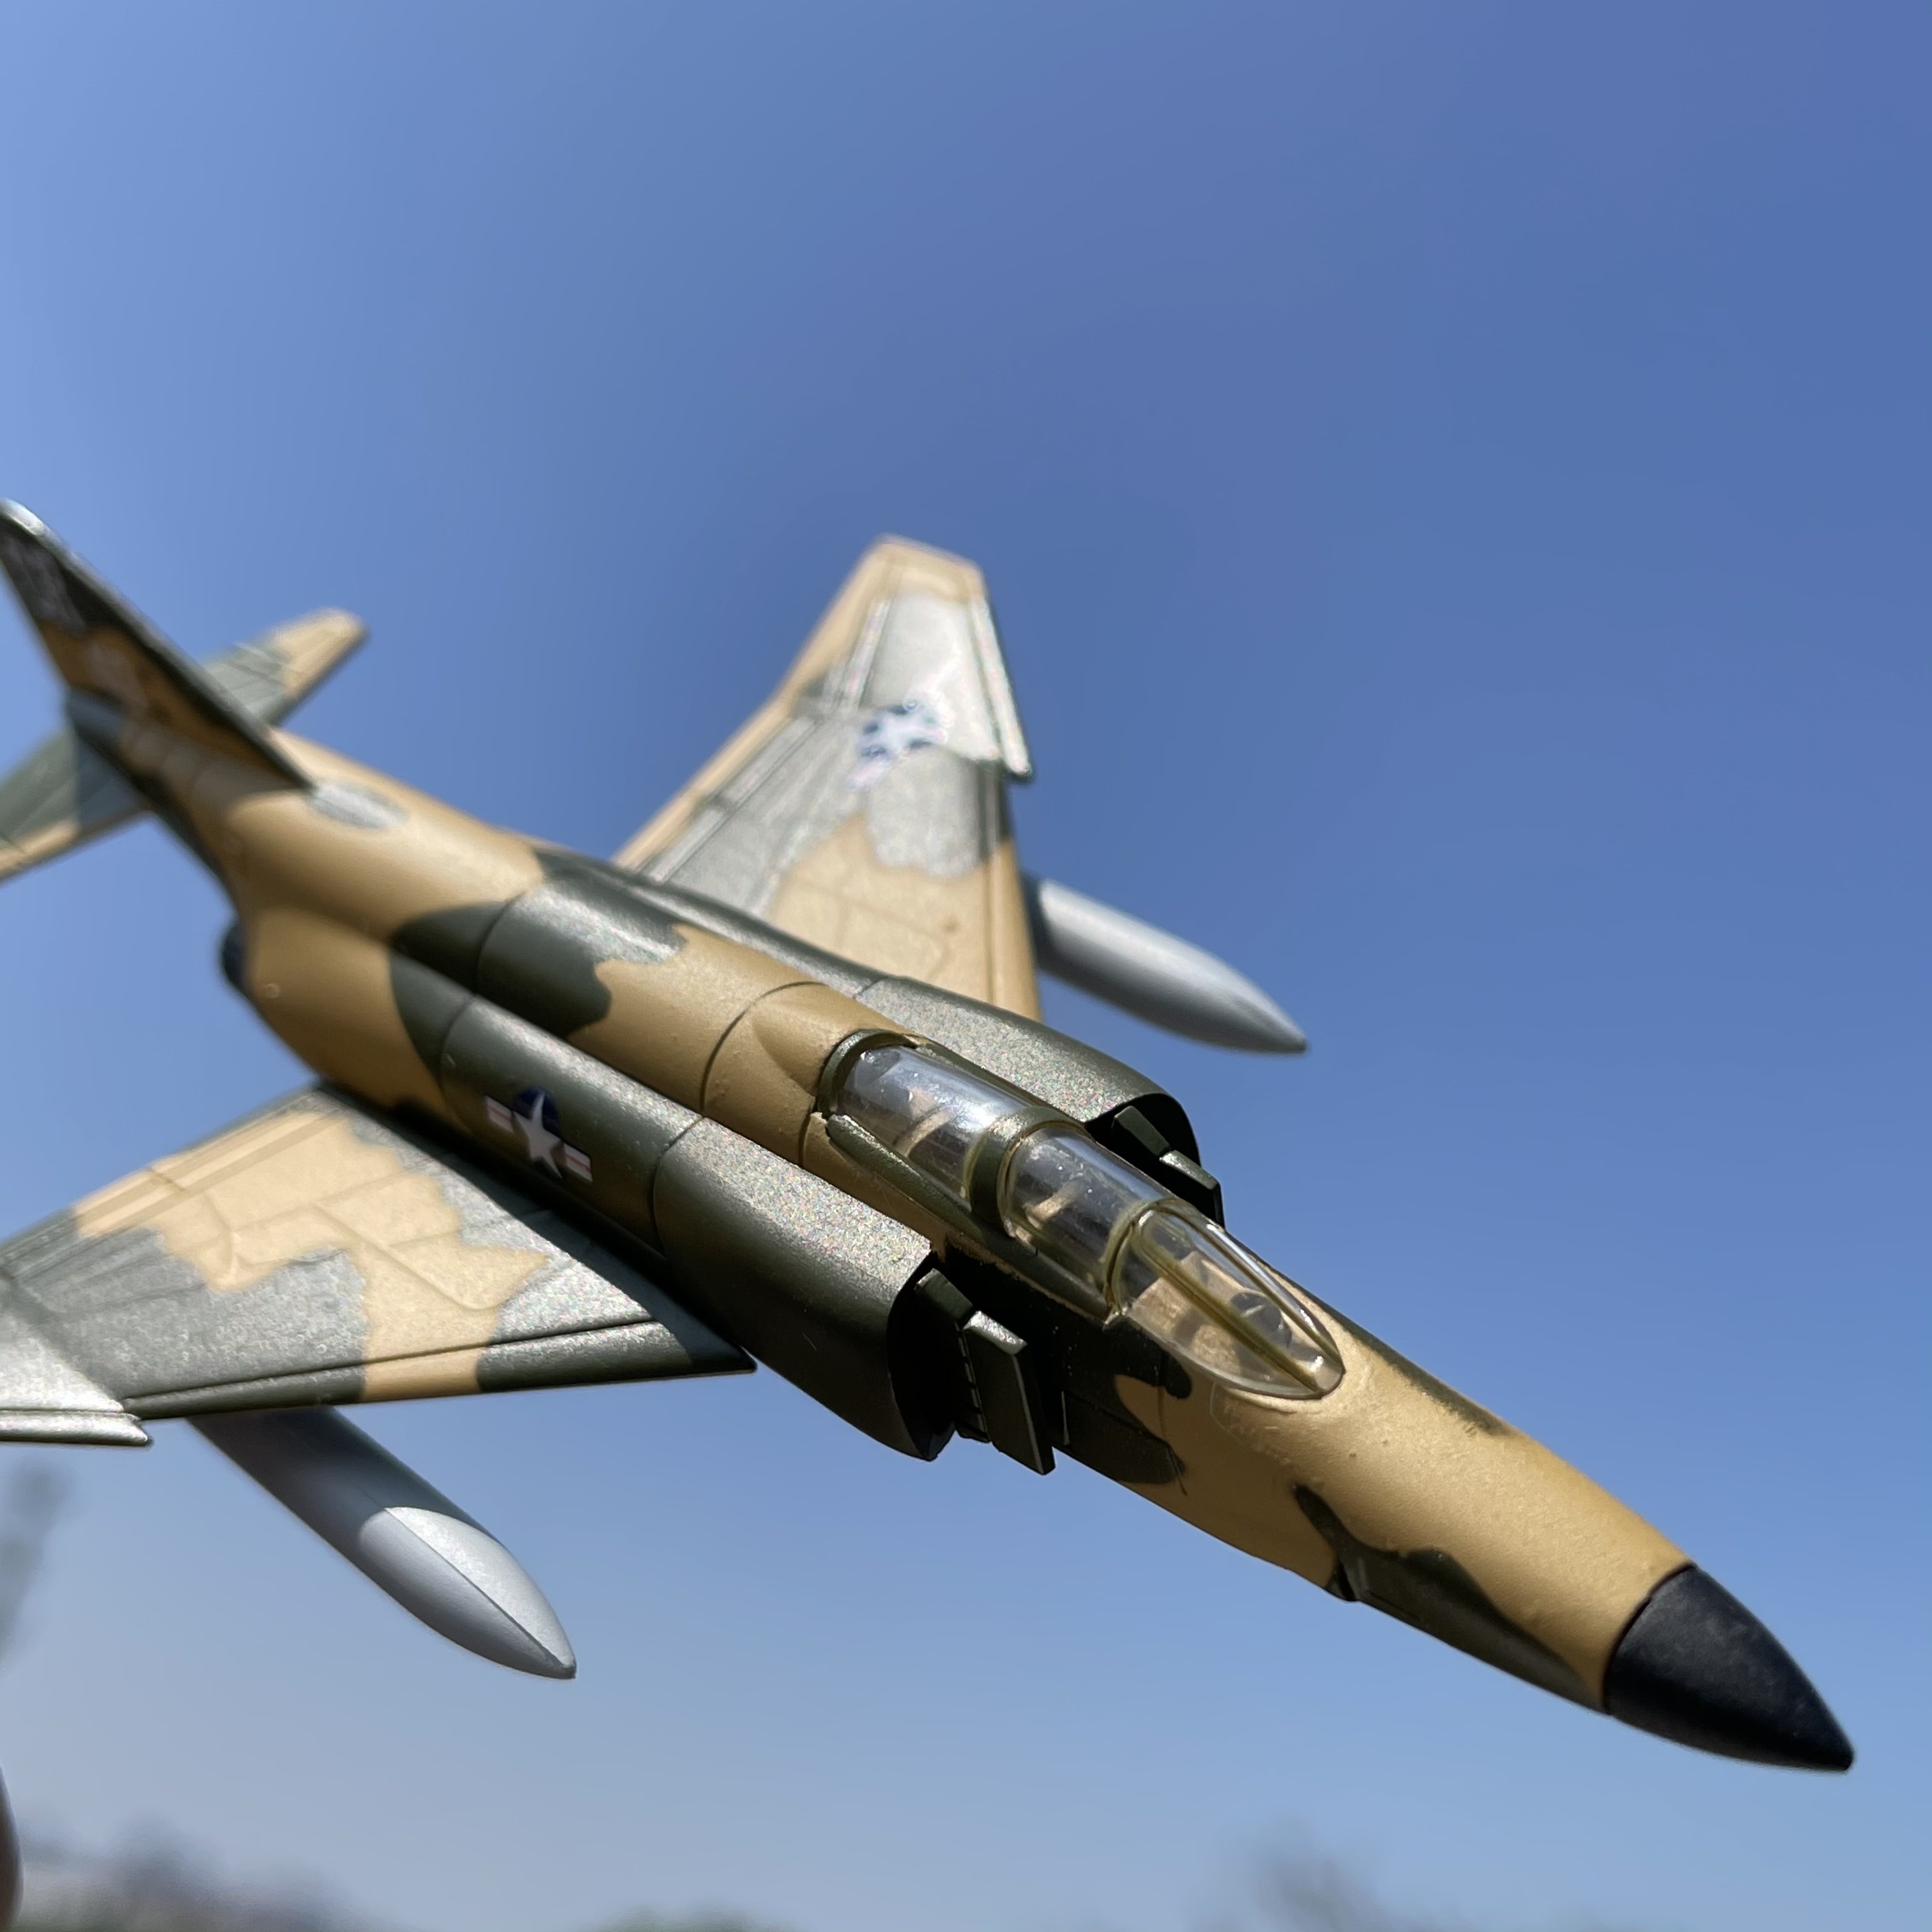 1:145美国空军F4鬼怪战斗机 合金飞机模型 军事航空模型收藏摆件